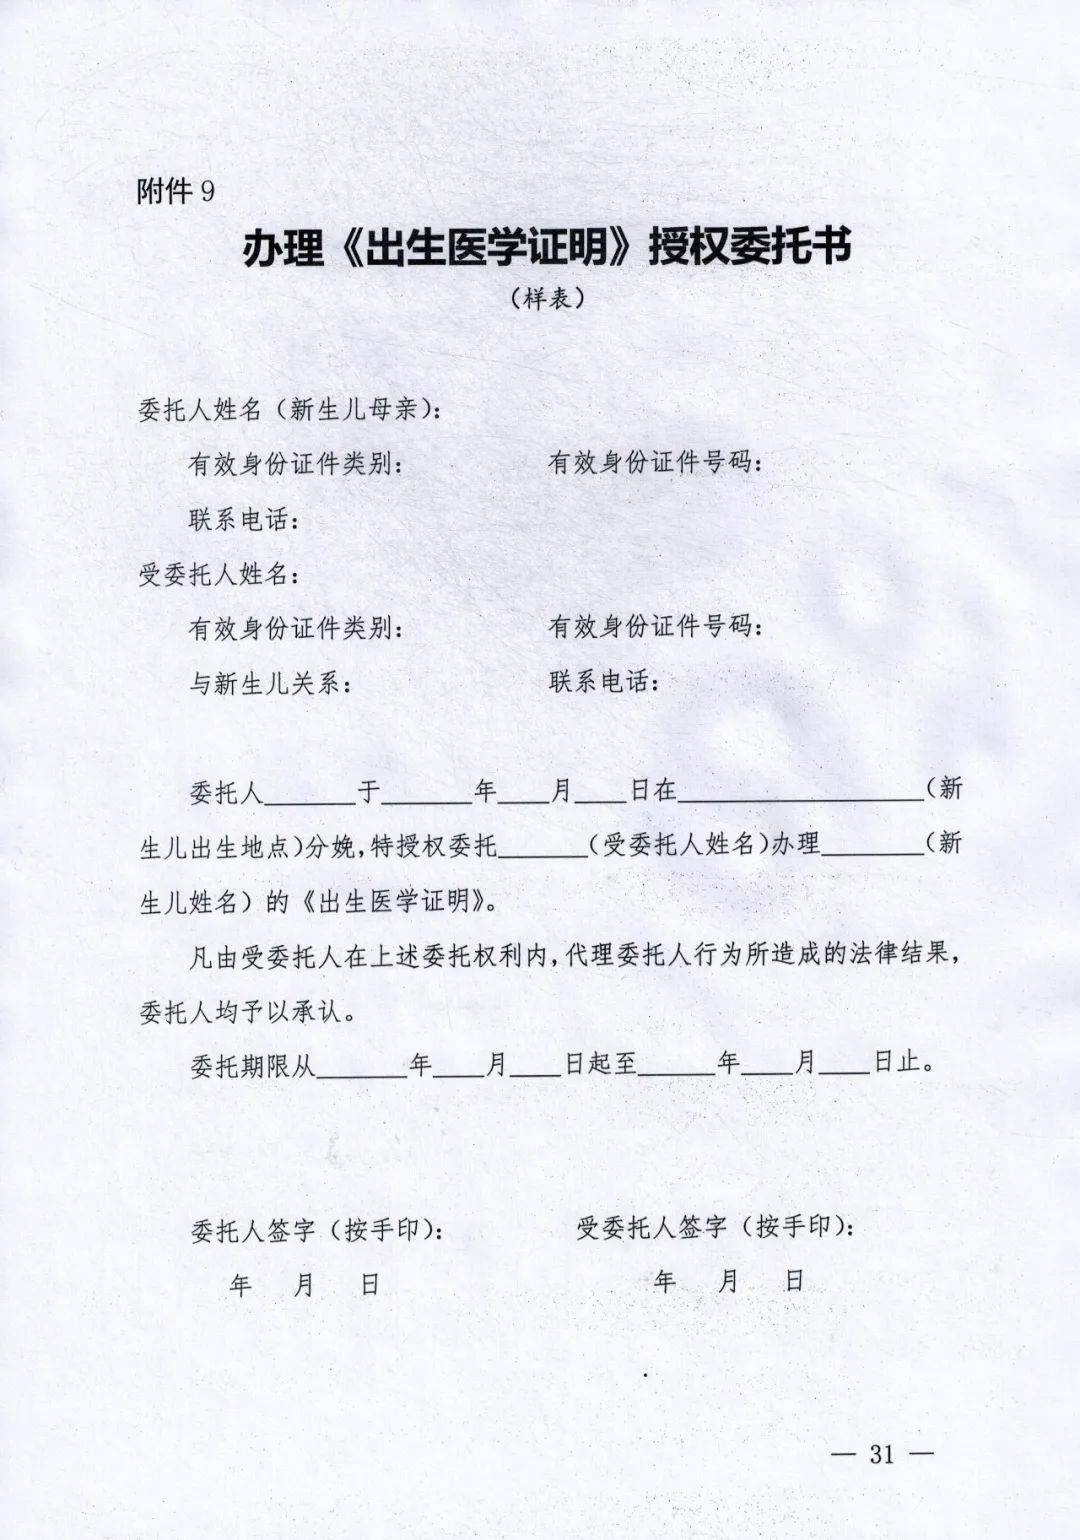 宁津县妇幼保健院关于暂停办理出生医学证明和分娩直报业务的通知